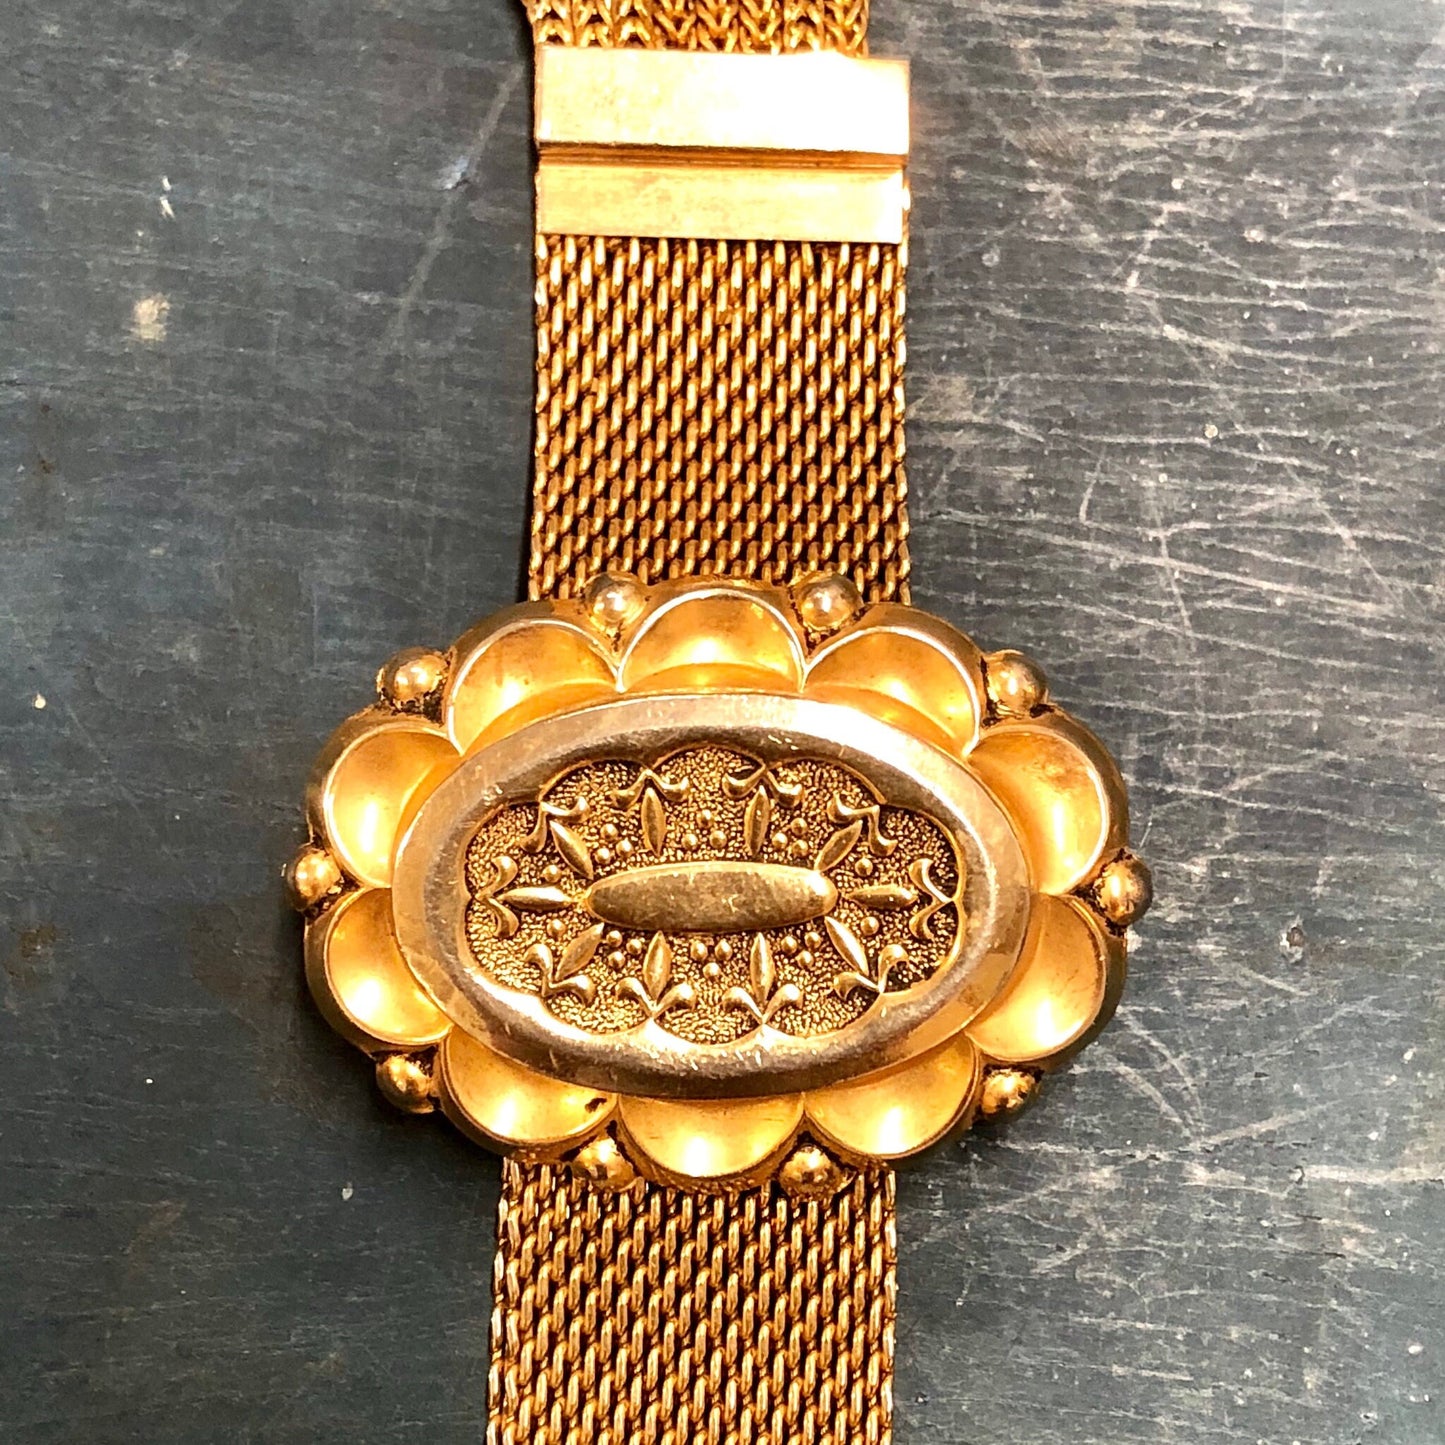 Vintage gold-toned link bracelet with ornate floral design and tassel detail on textured metal background